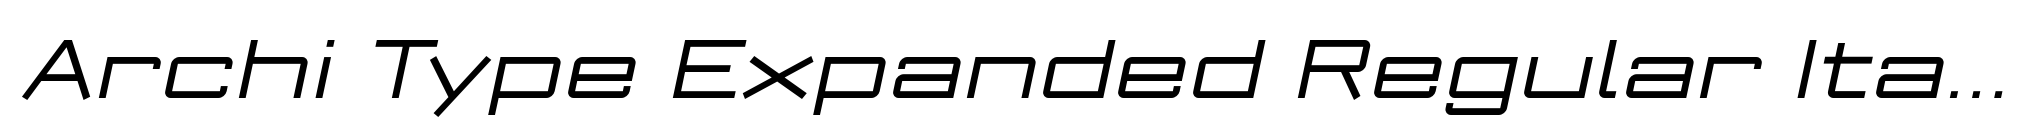 Archi Type Expanded Regular Italic image